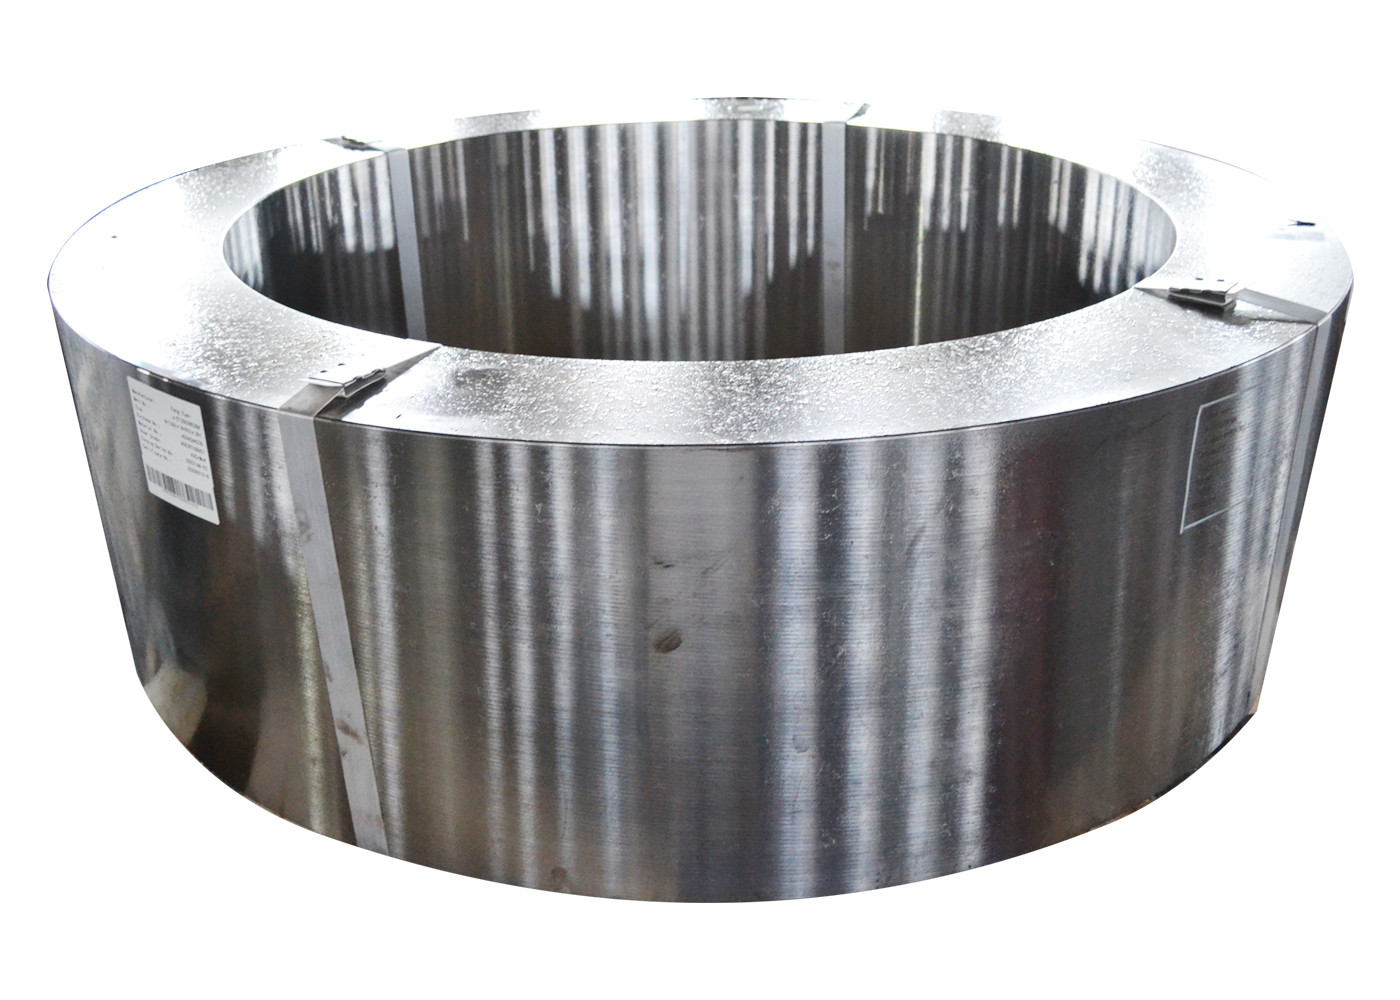 Forjamento de aço inoxidável do RUÍDO 1,4301 do tratamento térmico 2500mm